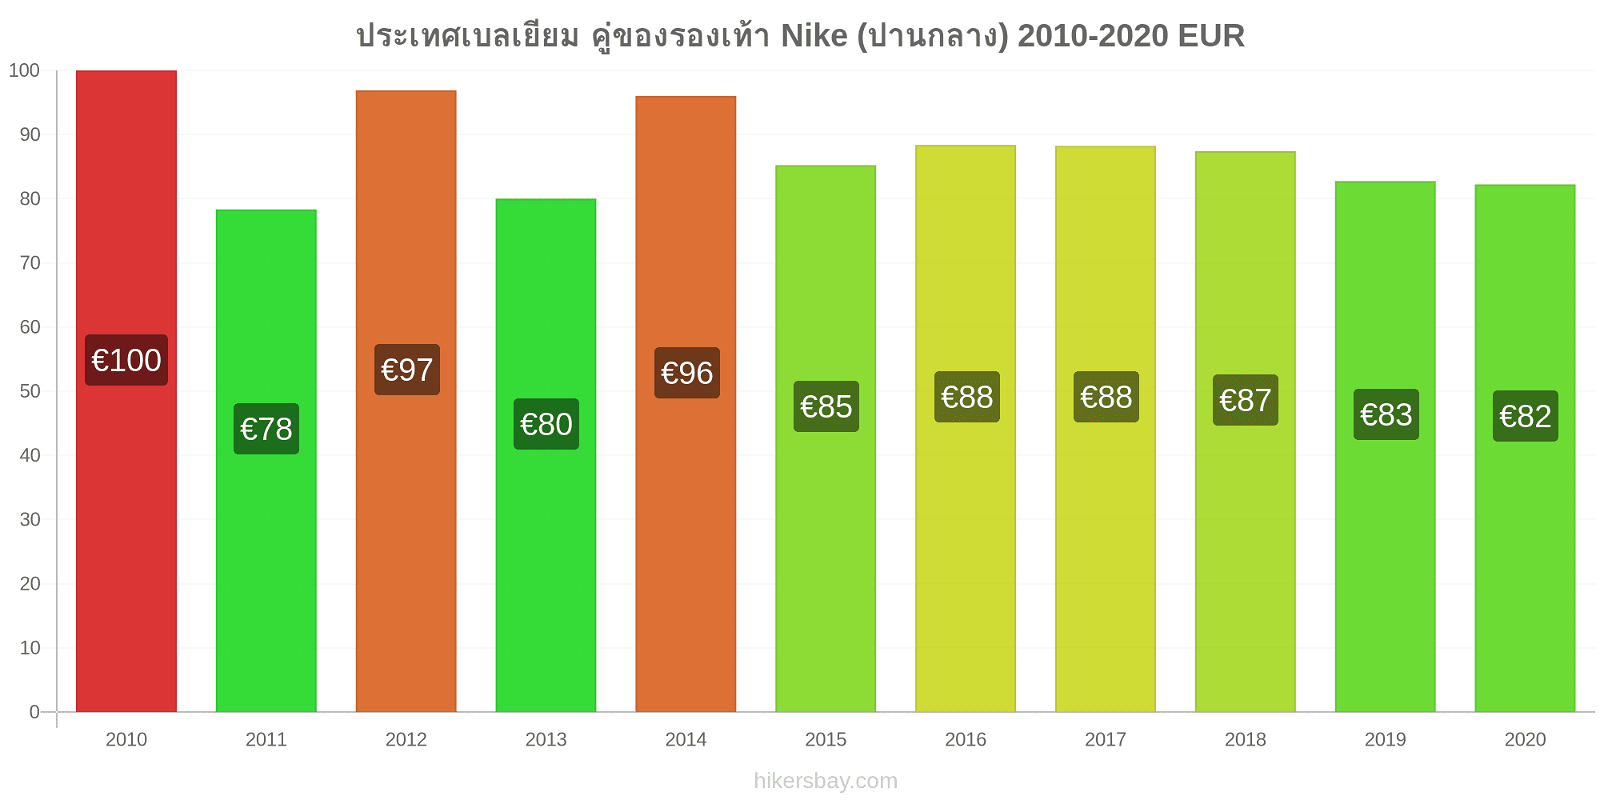 ประเทศเบลเยียม การเปลี่ยนแปลงราคา คู่ของรองเท้า Nike (ปานกลาง) hikersbay.com